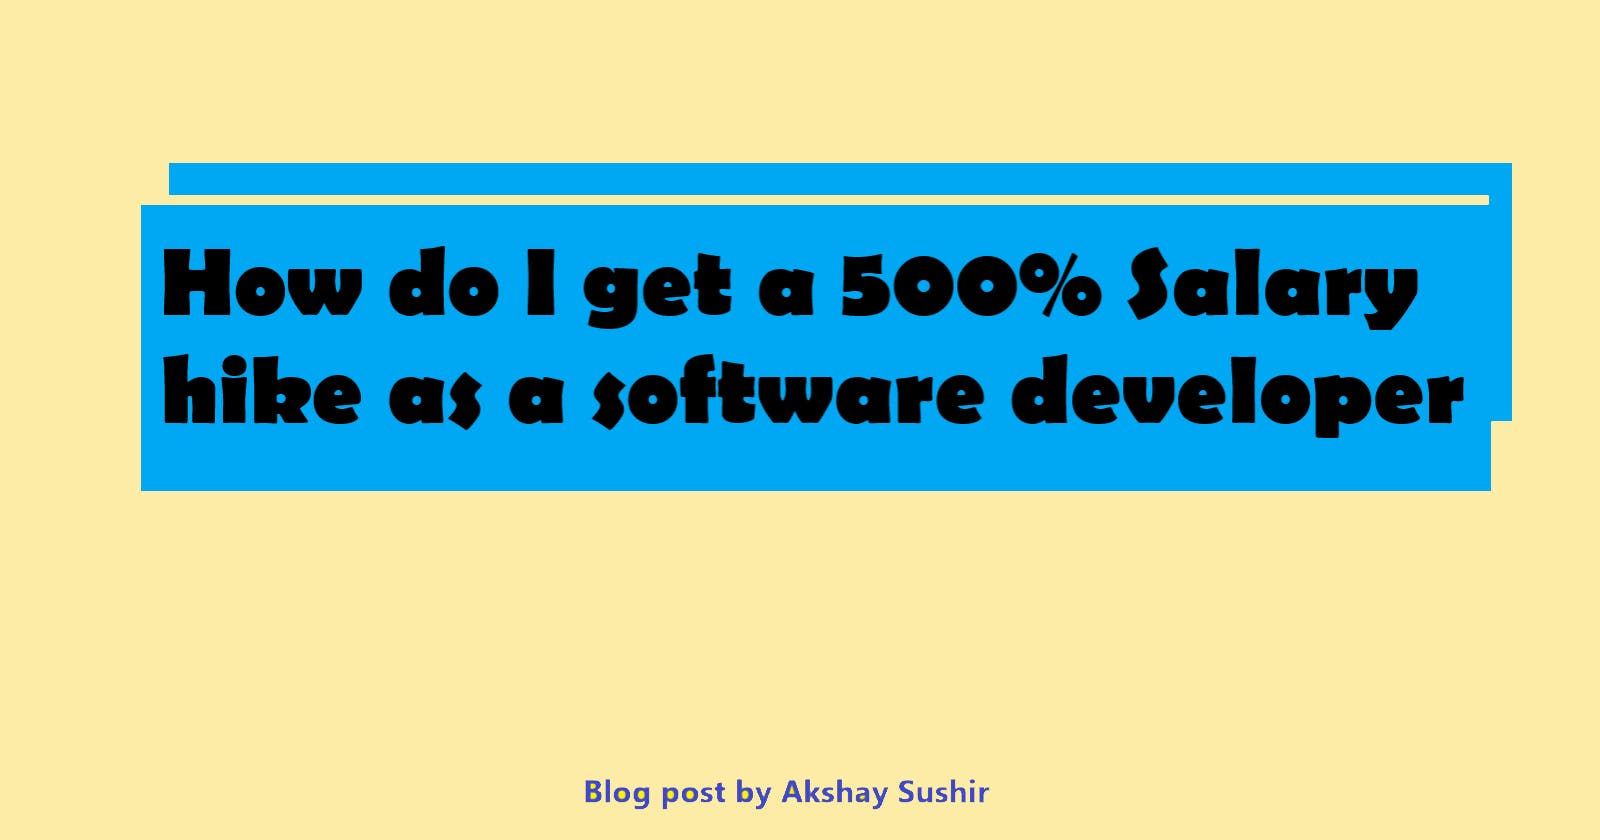 How do I get a 500% Salary hike as a software developer?